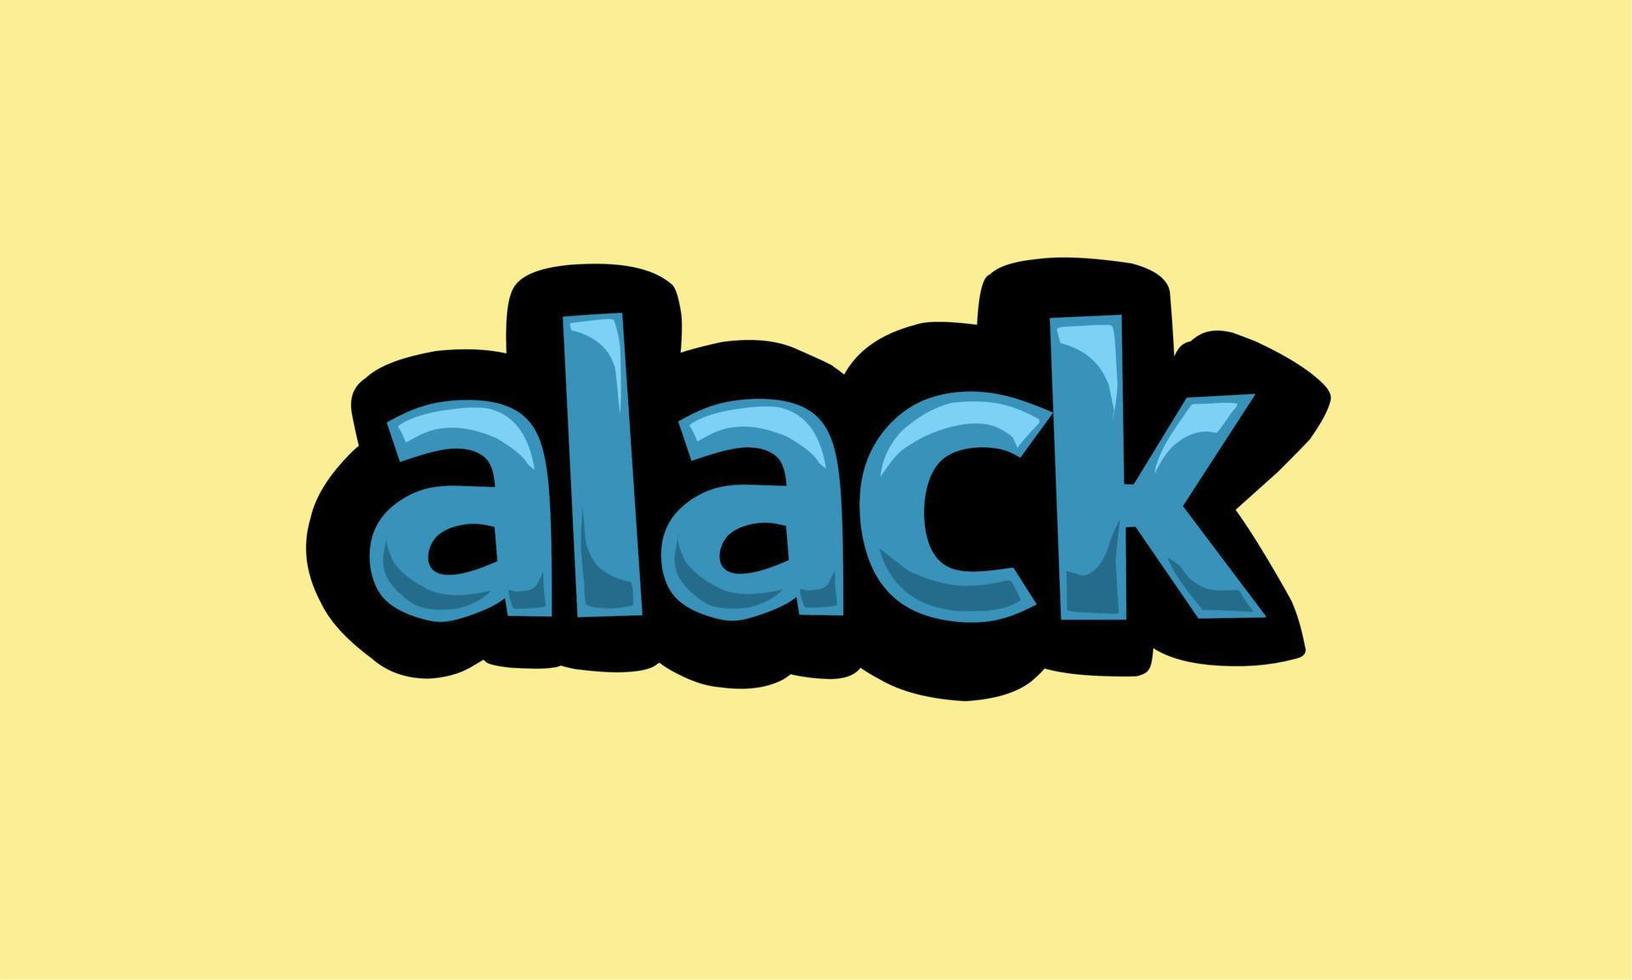 Alack-Schreibvektordesign auf gelbem Hintergrund vektor